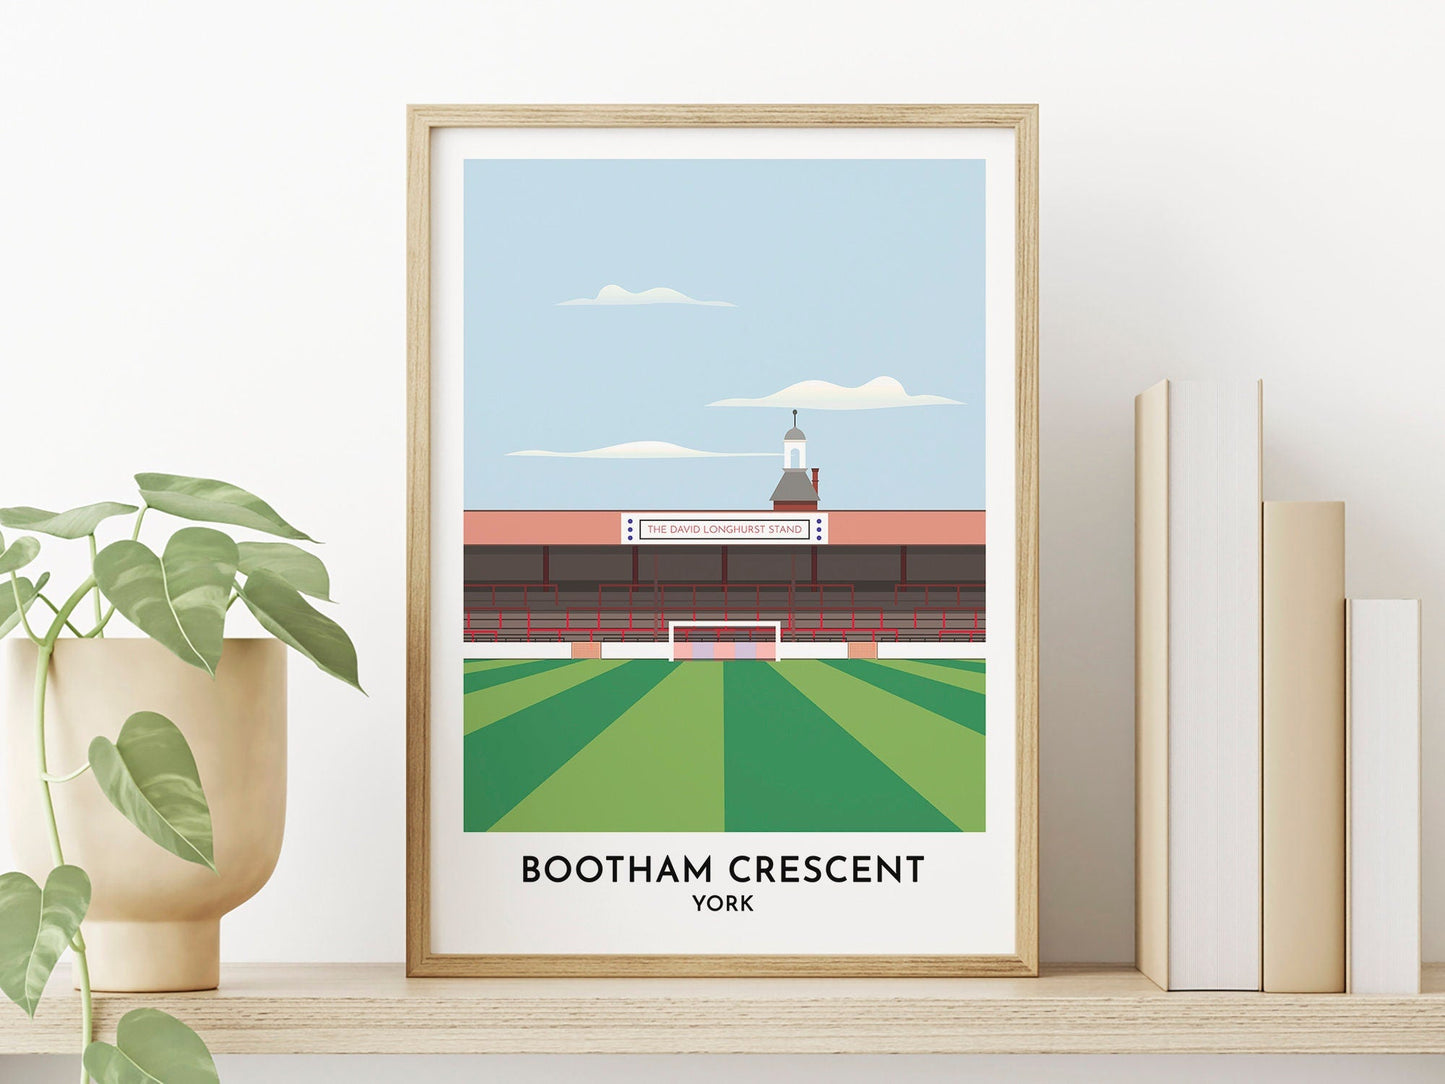 York City Football - Bootham Crescent Art Print - Gift for Men - Soccer Stadium Arena Poster - Turf Football Art